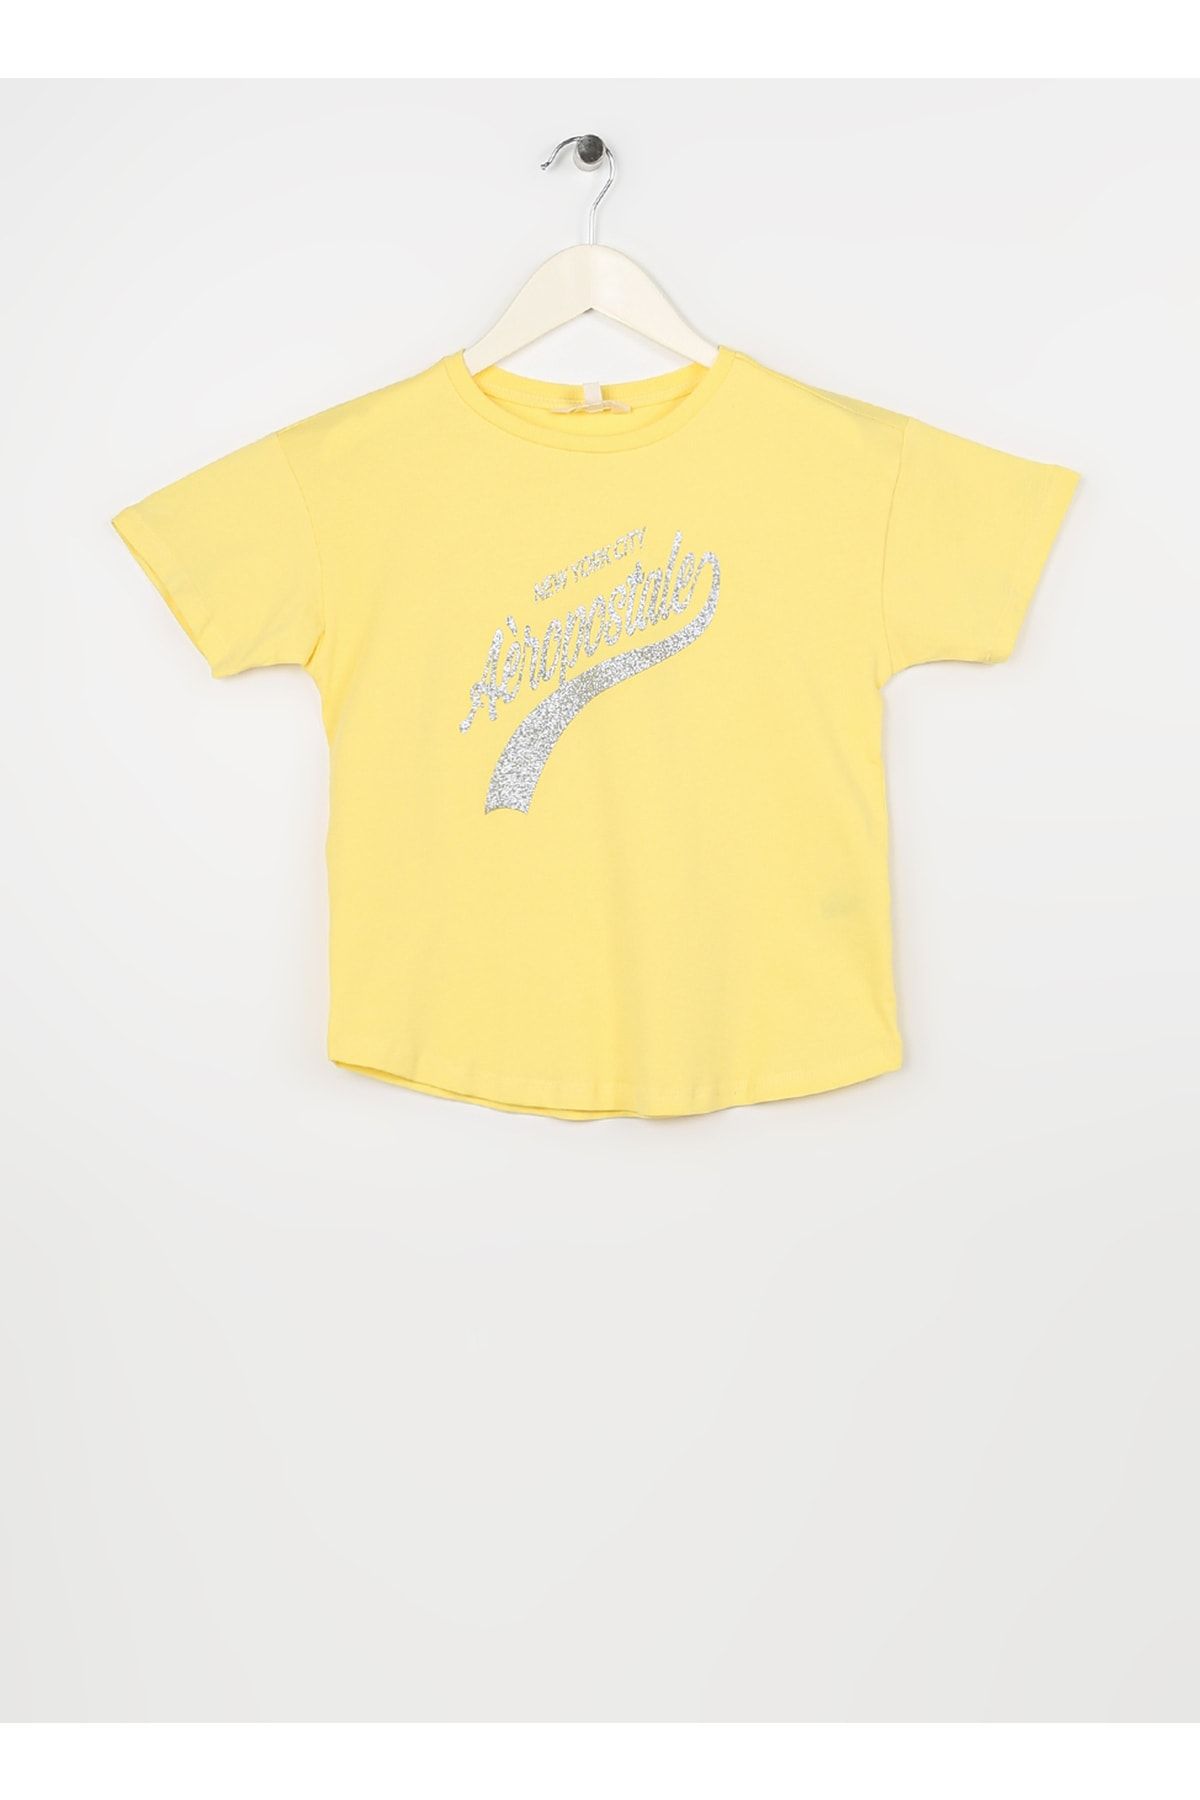 Aeropostale Baskılı Sarı Kız Çocuk T-shirt 23sag-41